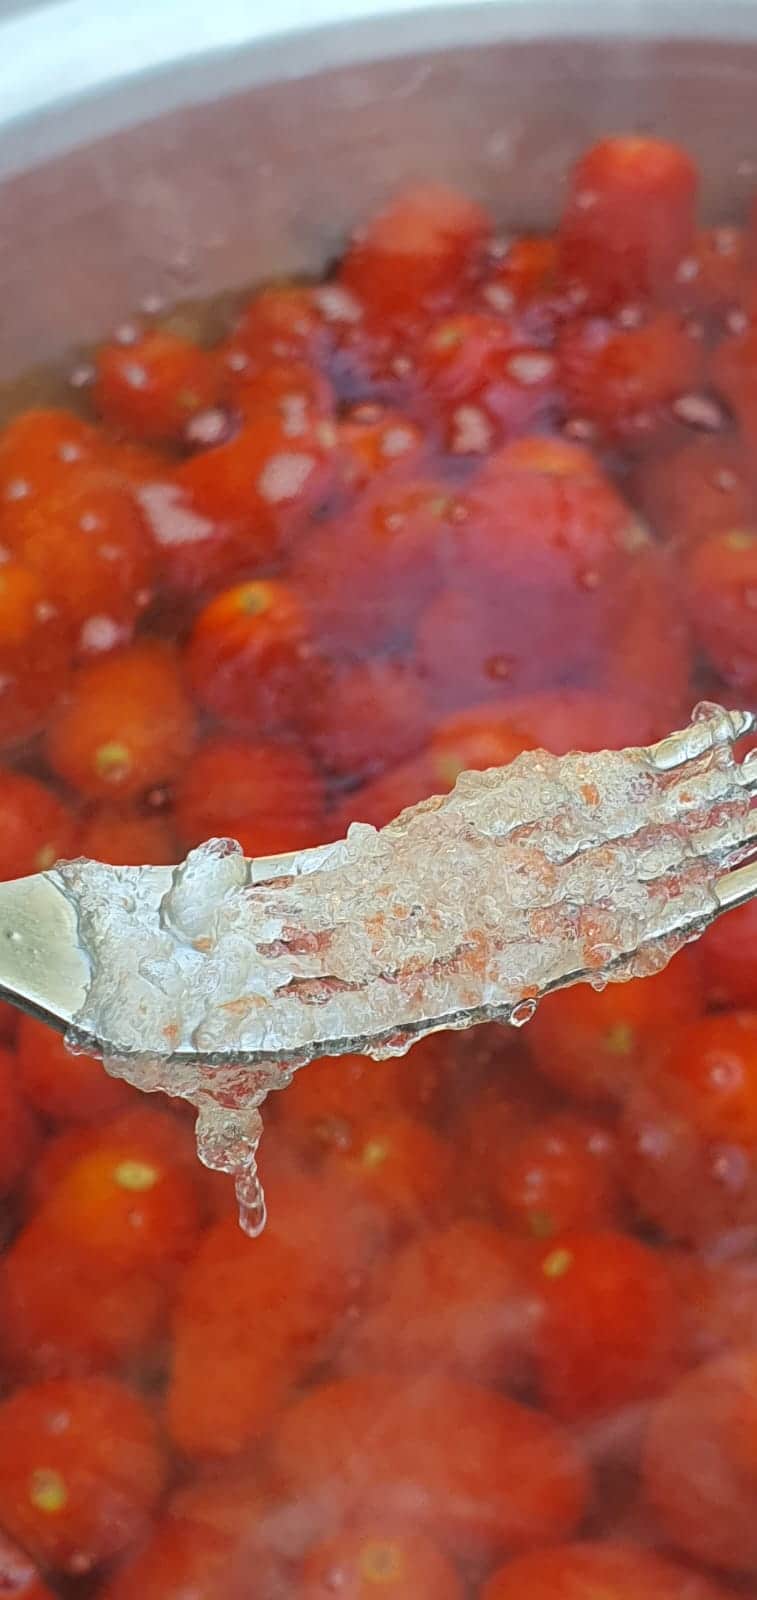 Quella strana gelatina nella salsa di pomodoro